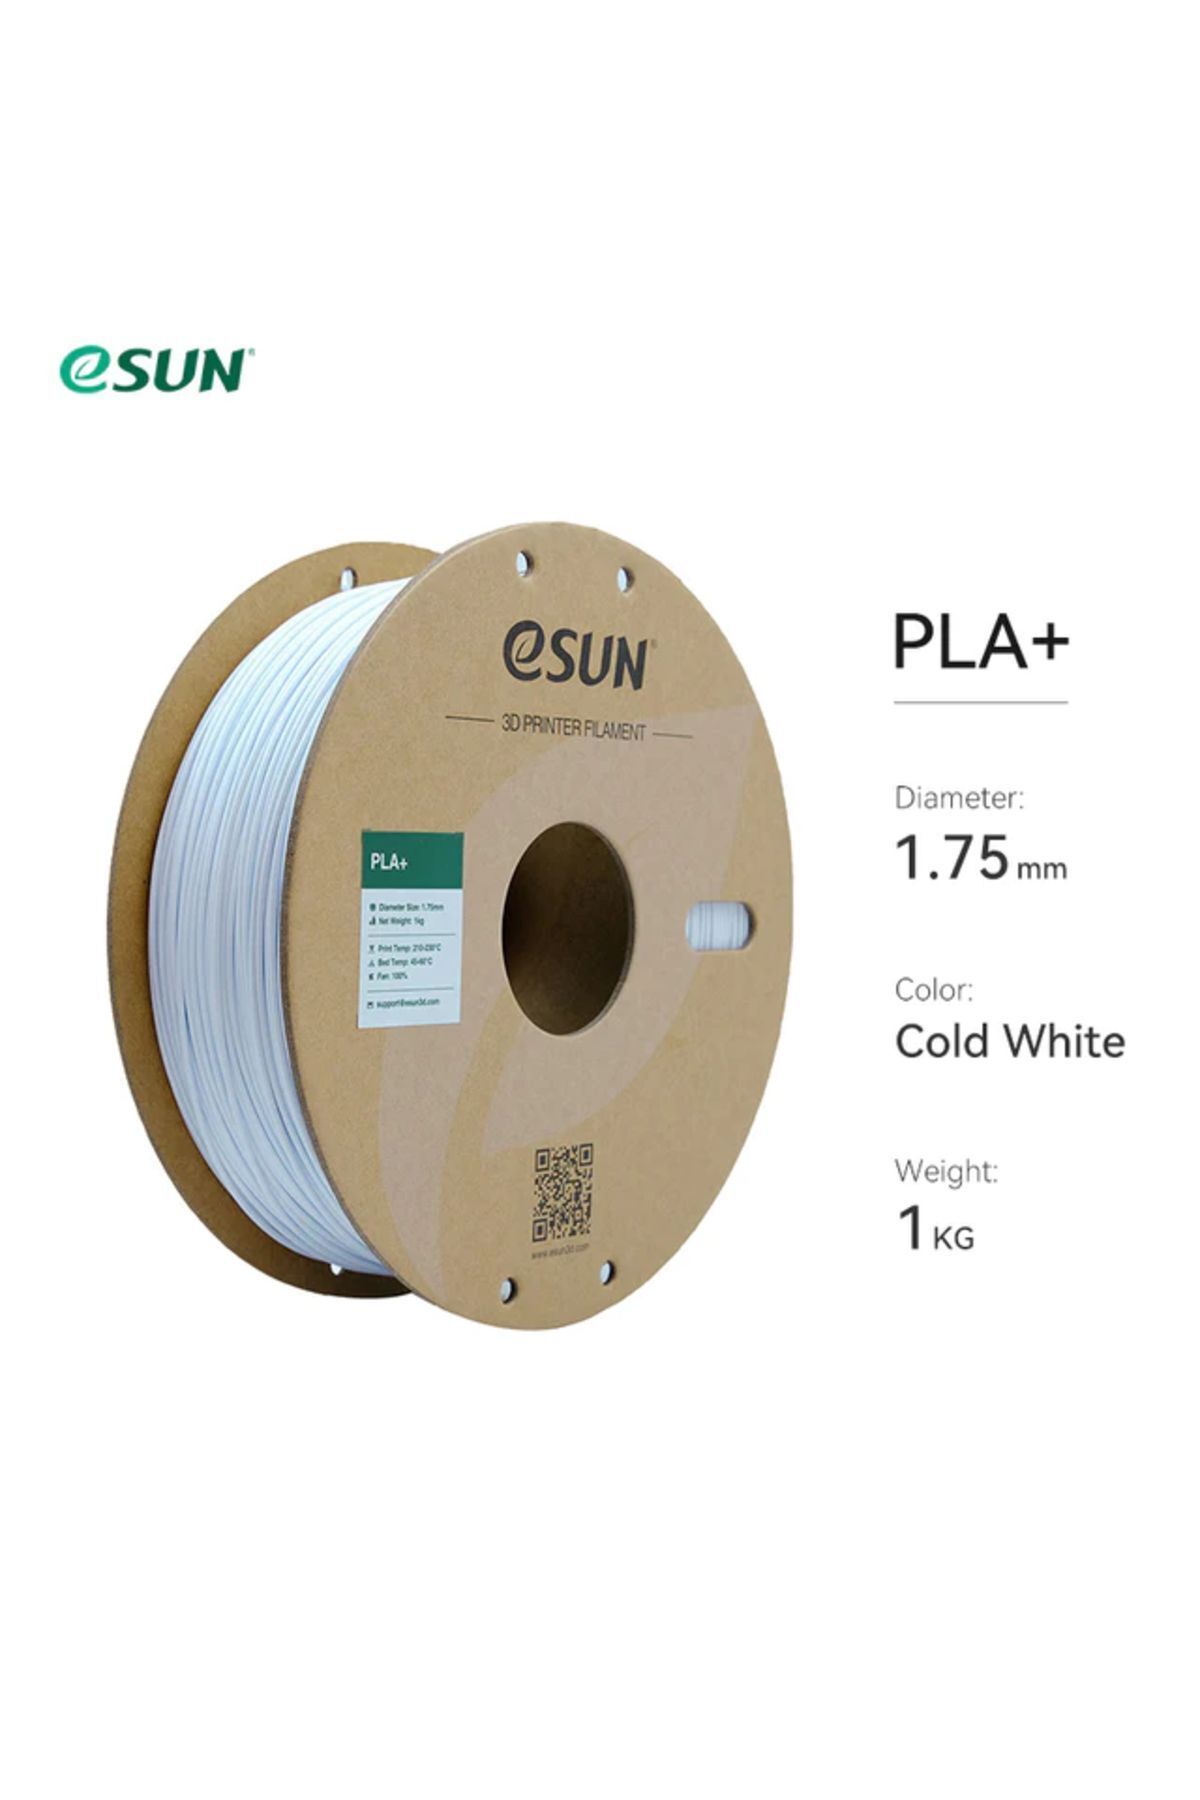 eSun Soğuk Beyaz Pla Plus Filament 1.75mm 1 Kg Plus